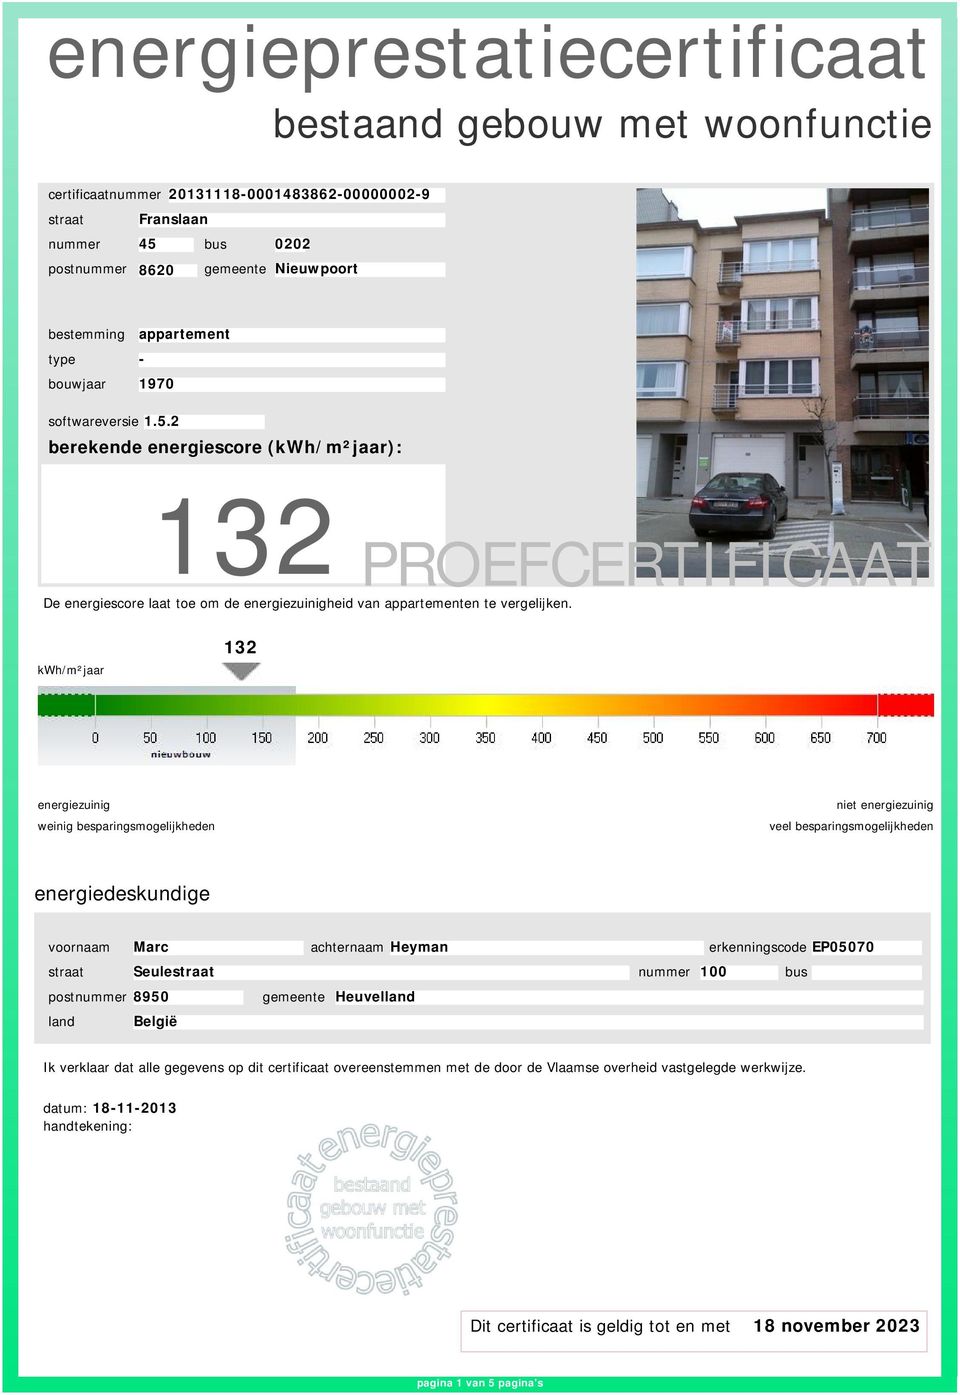 2 berekende energiescore (kwh/m²jaar): 132 PROEFCERTIFICAAT De energiescore laat toe om de heid van appartementen te vergelijken.